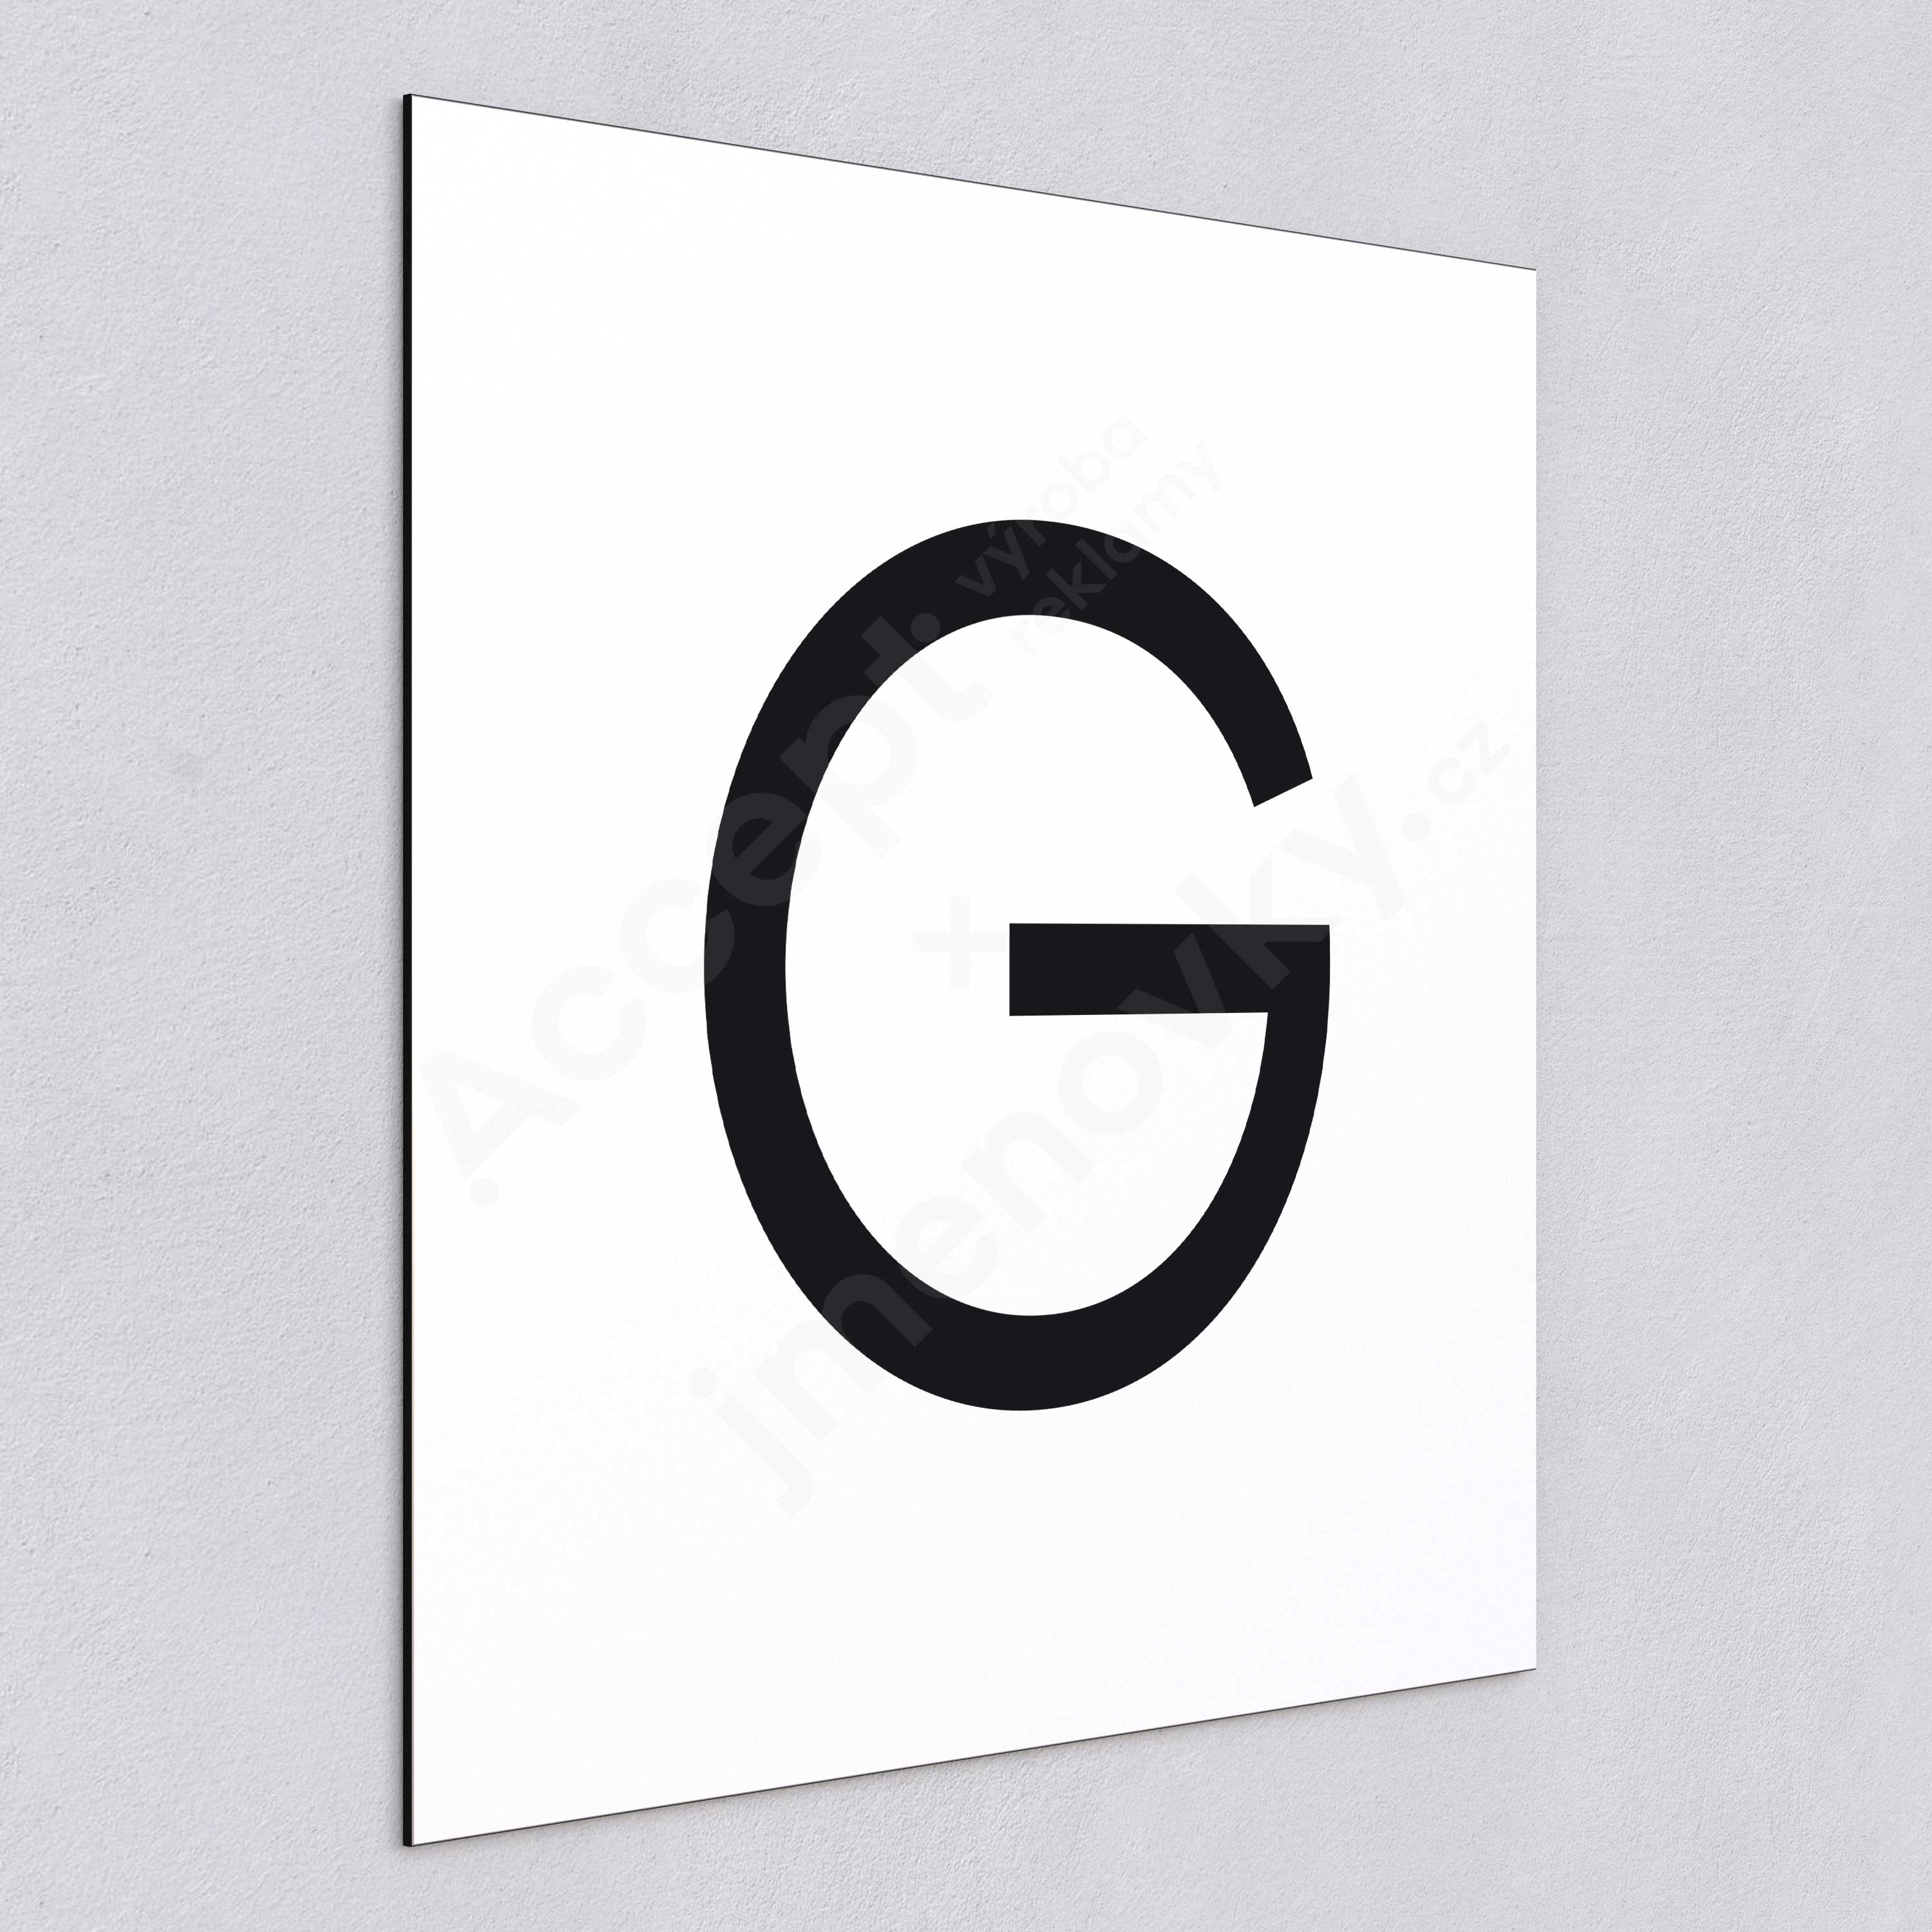 ACCEPT Označení podlaží - písmeno "G" (300 x 300 mm) - bílá tabulka - černý popis